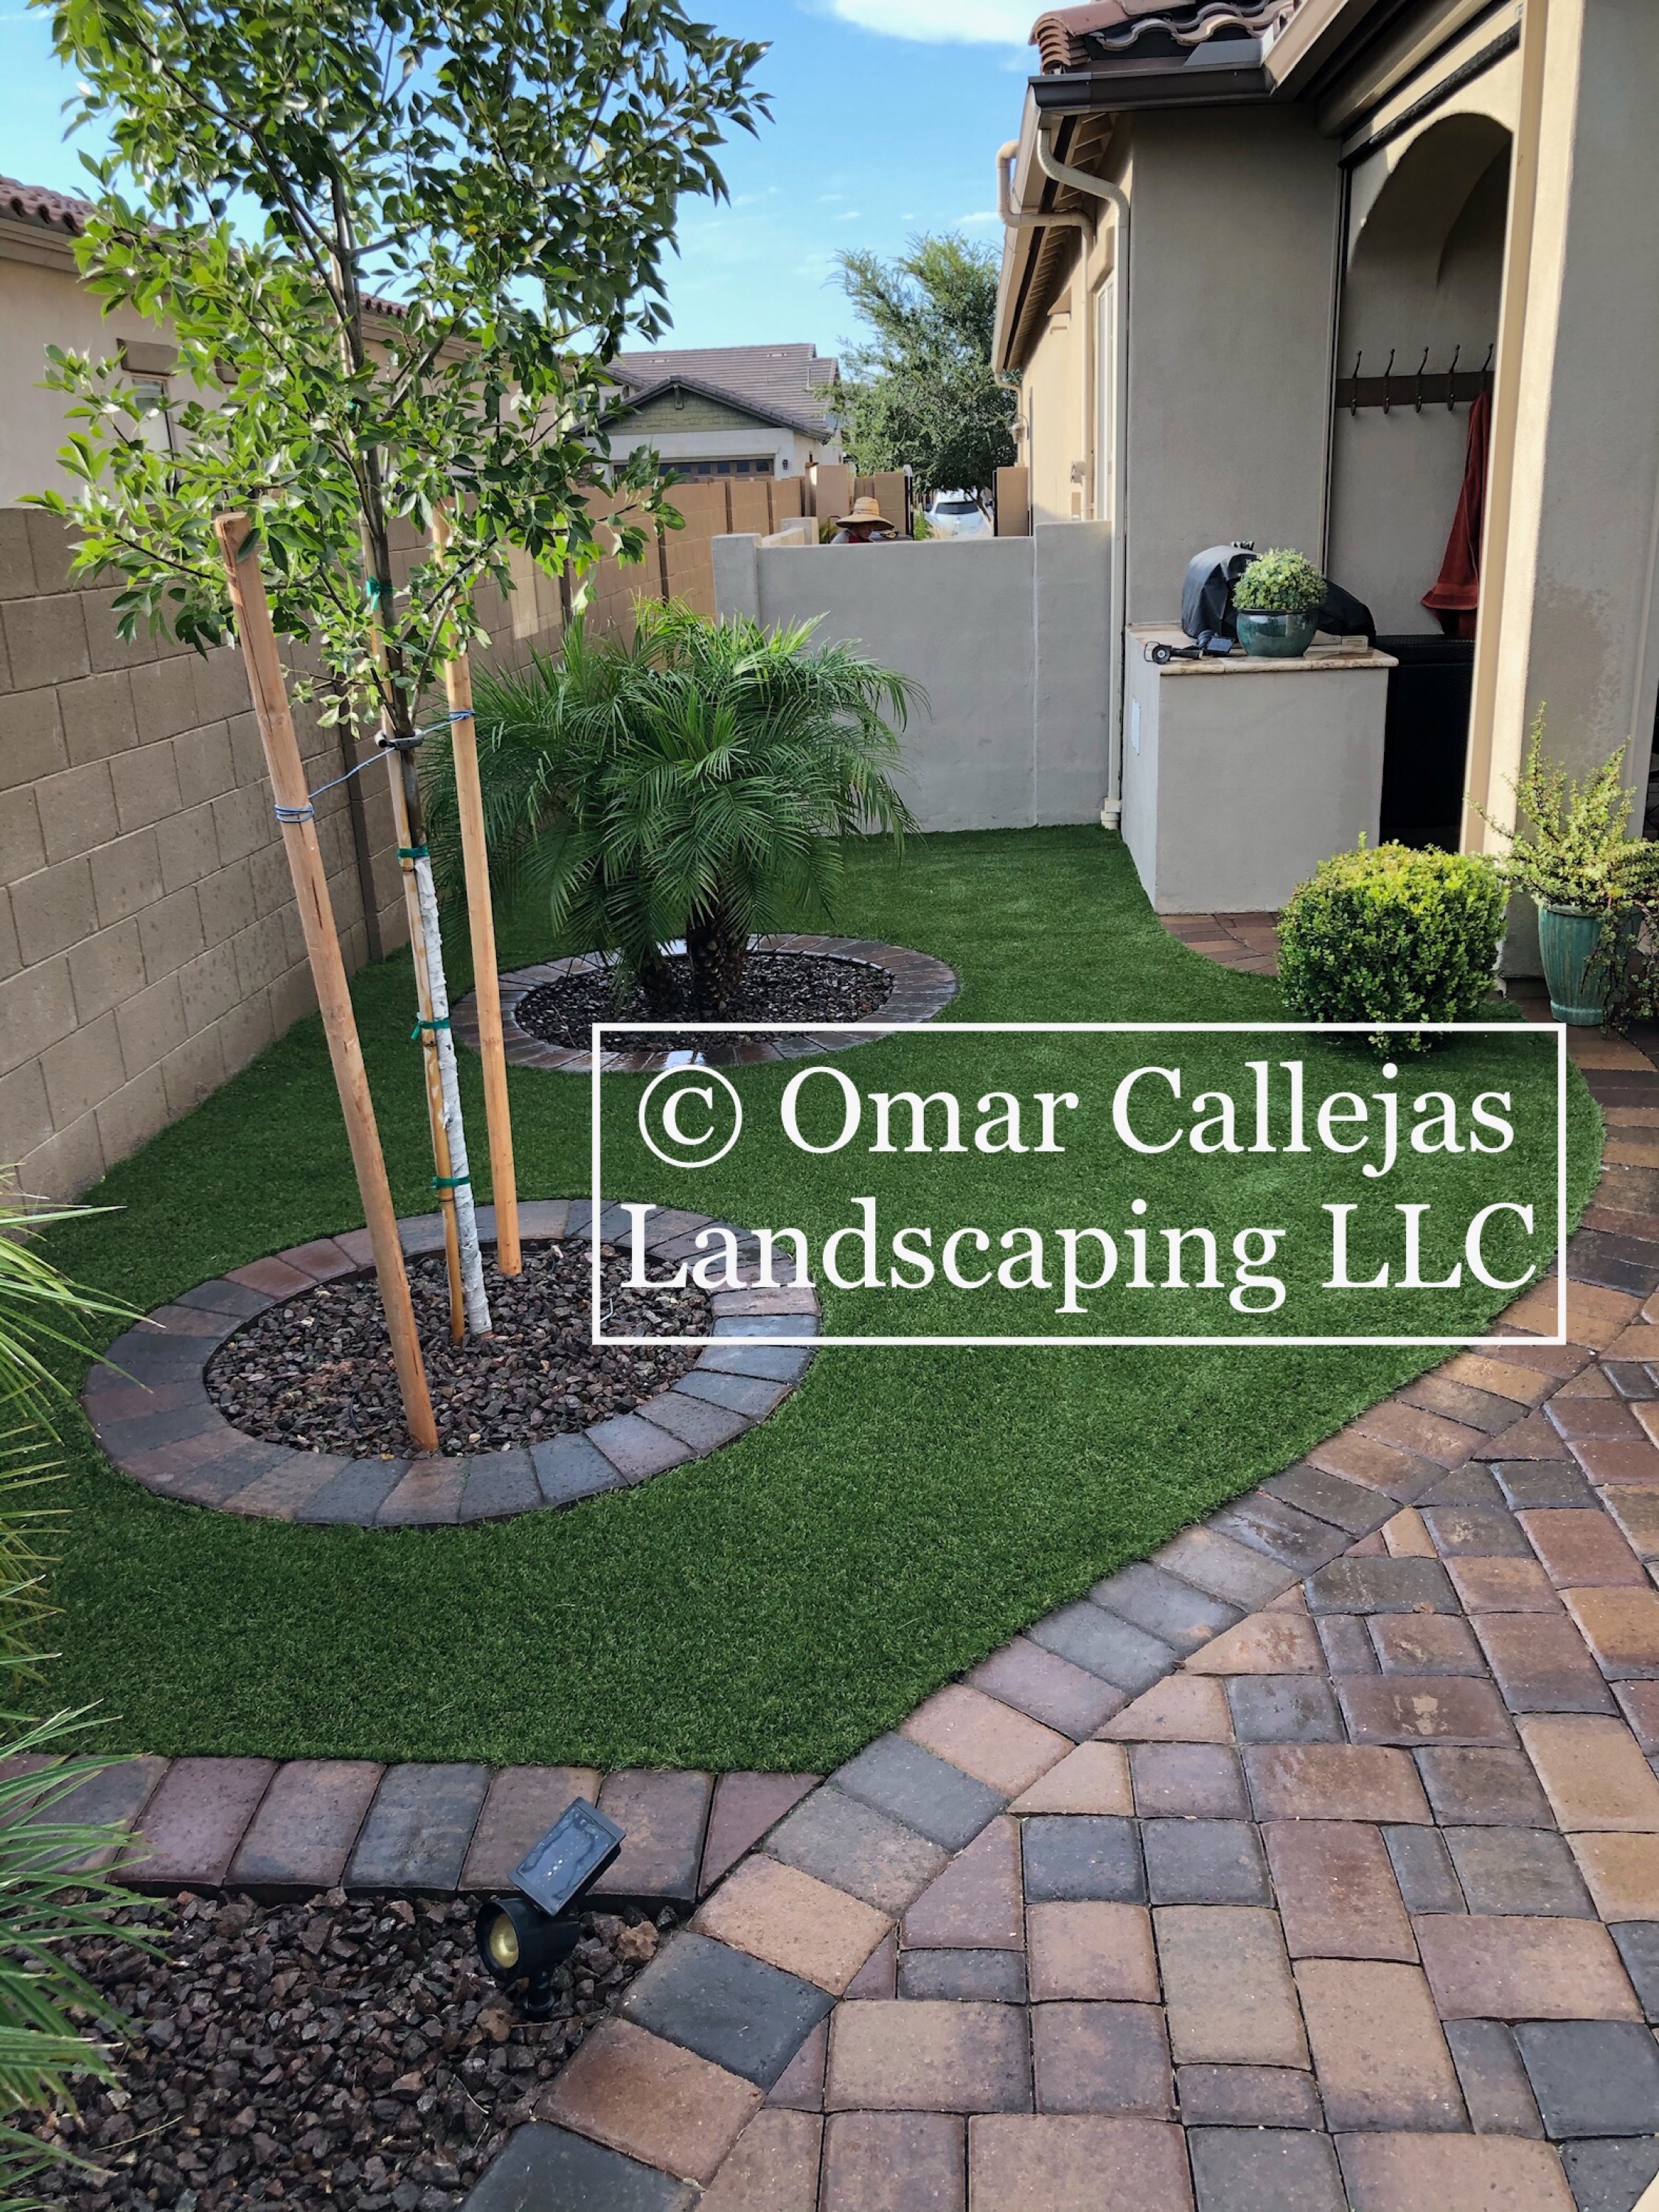 Omar Callejas Landscaping, LLC Logo